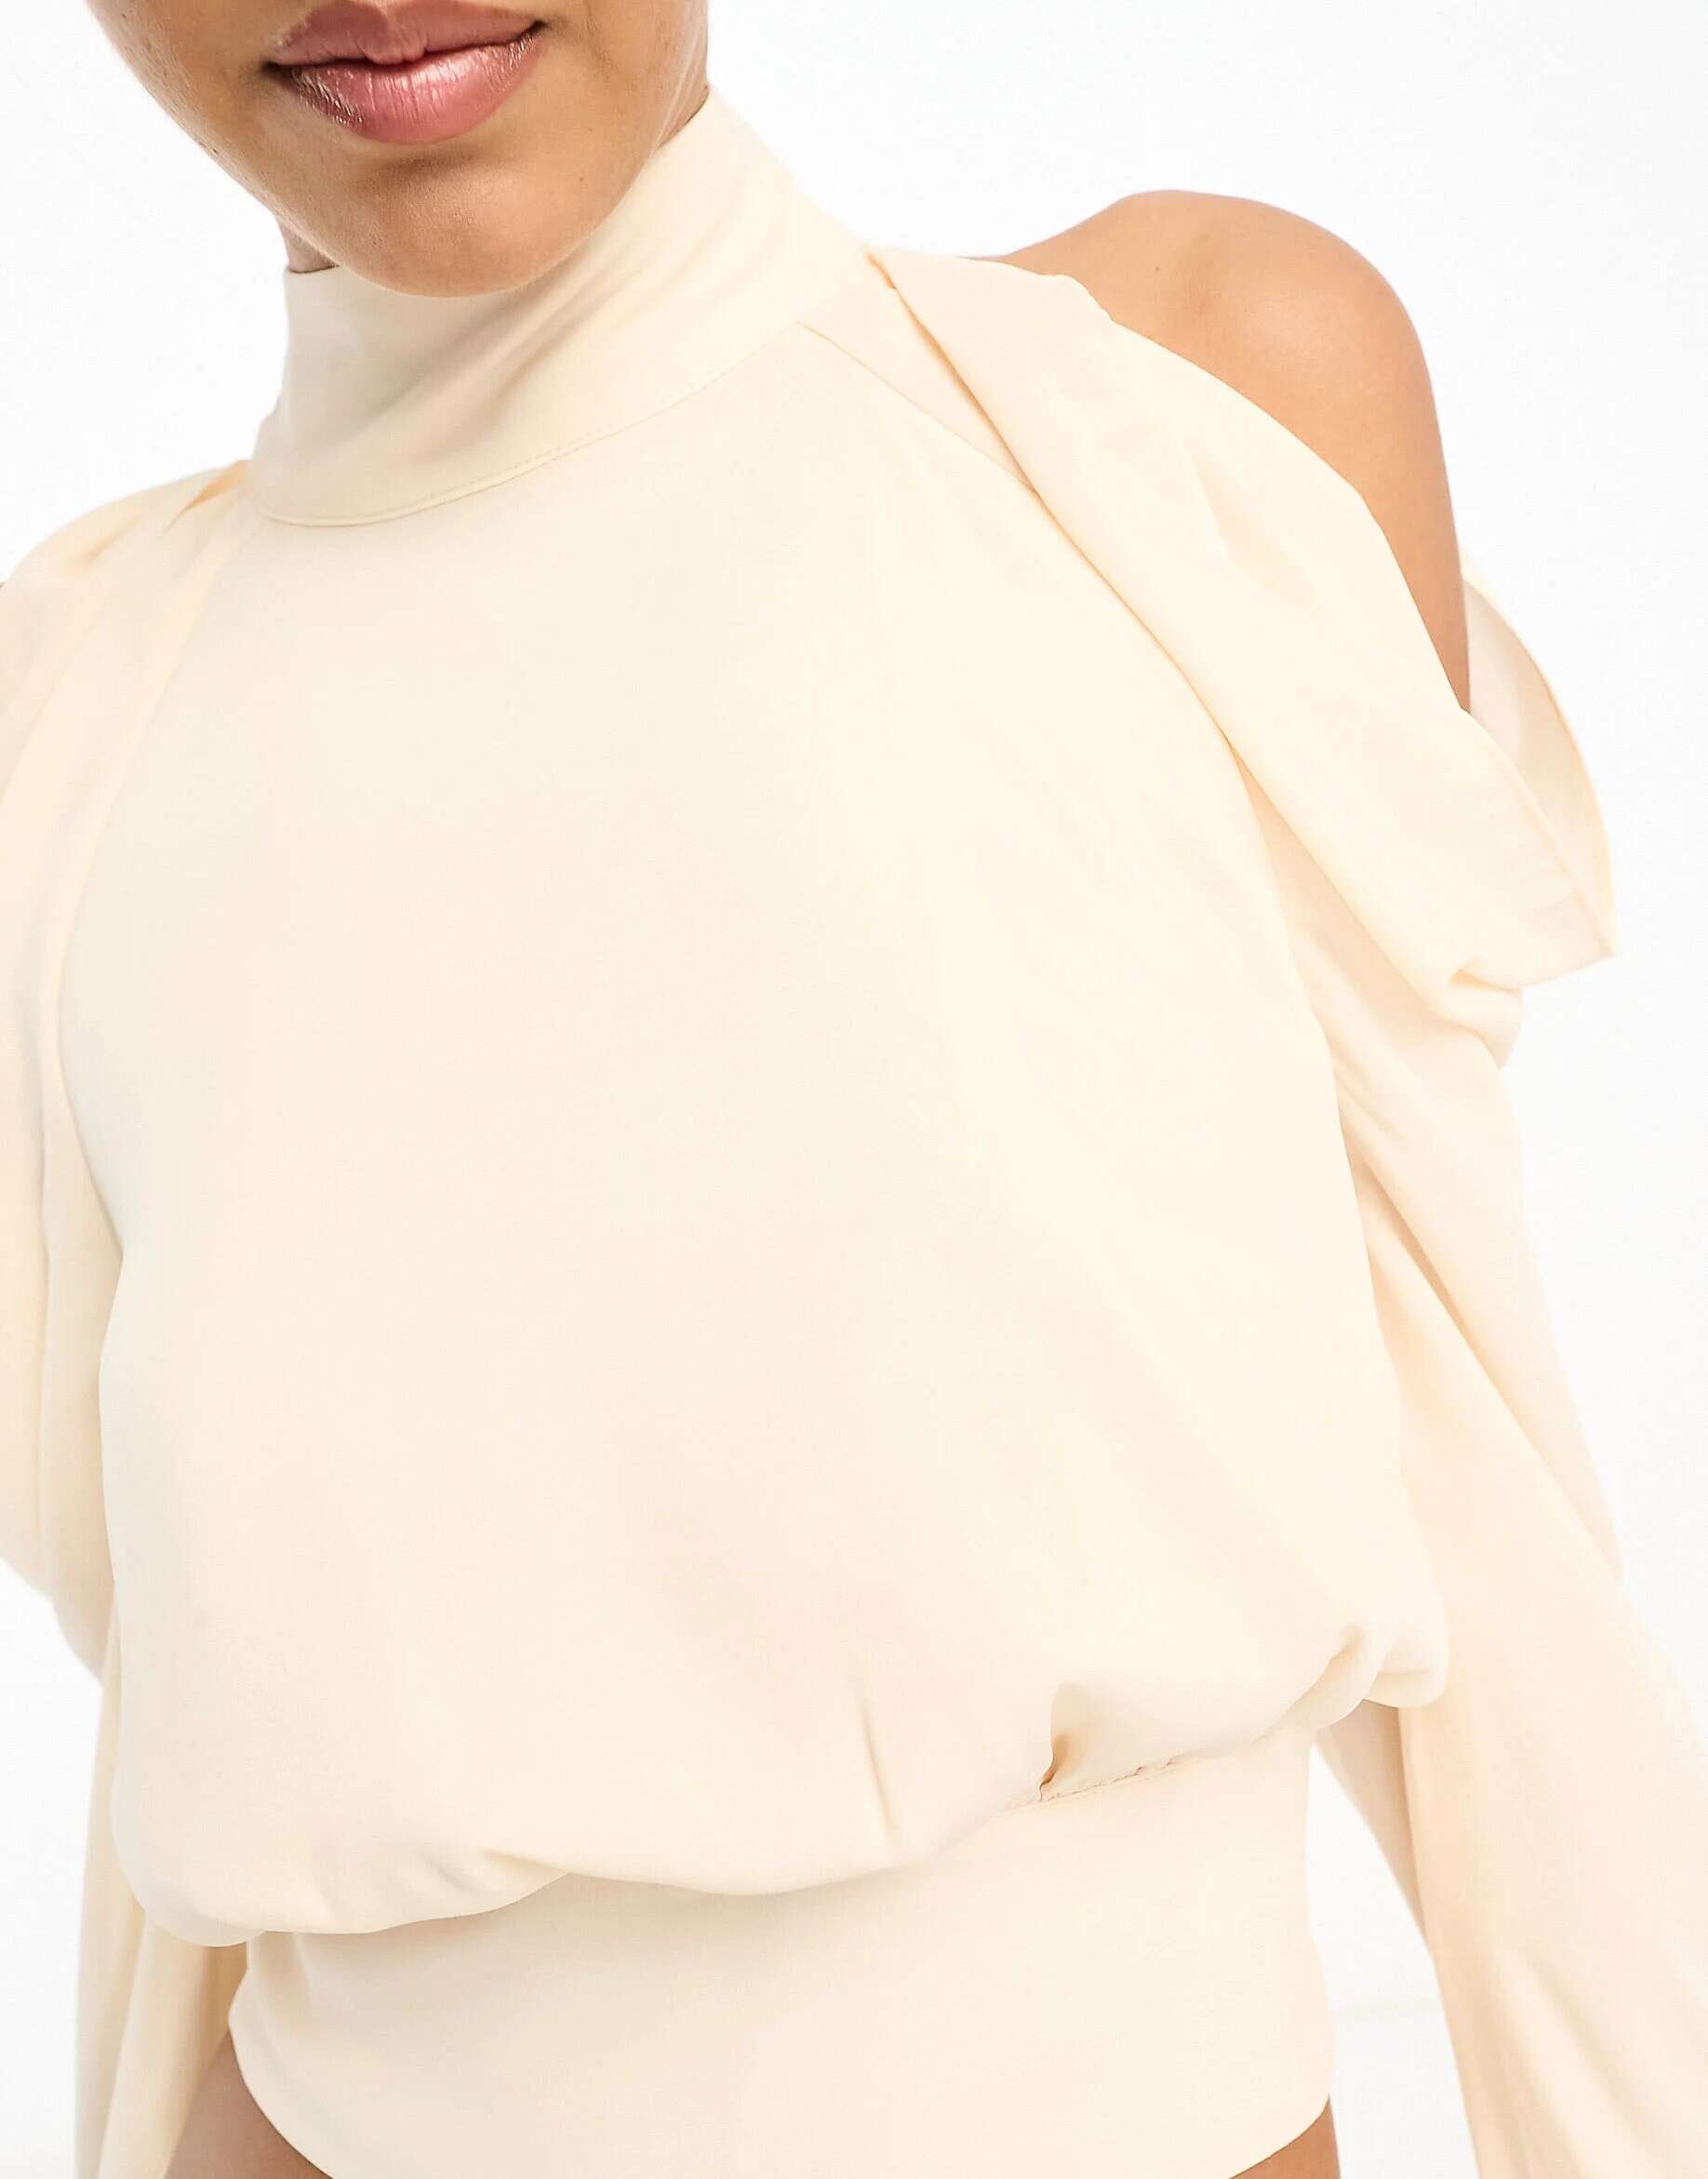 Кремовая блузка с высоким воротником и вырезами на плечах Pretty Lavish